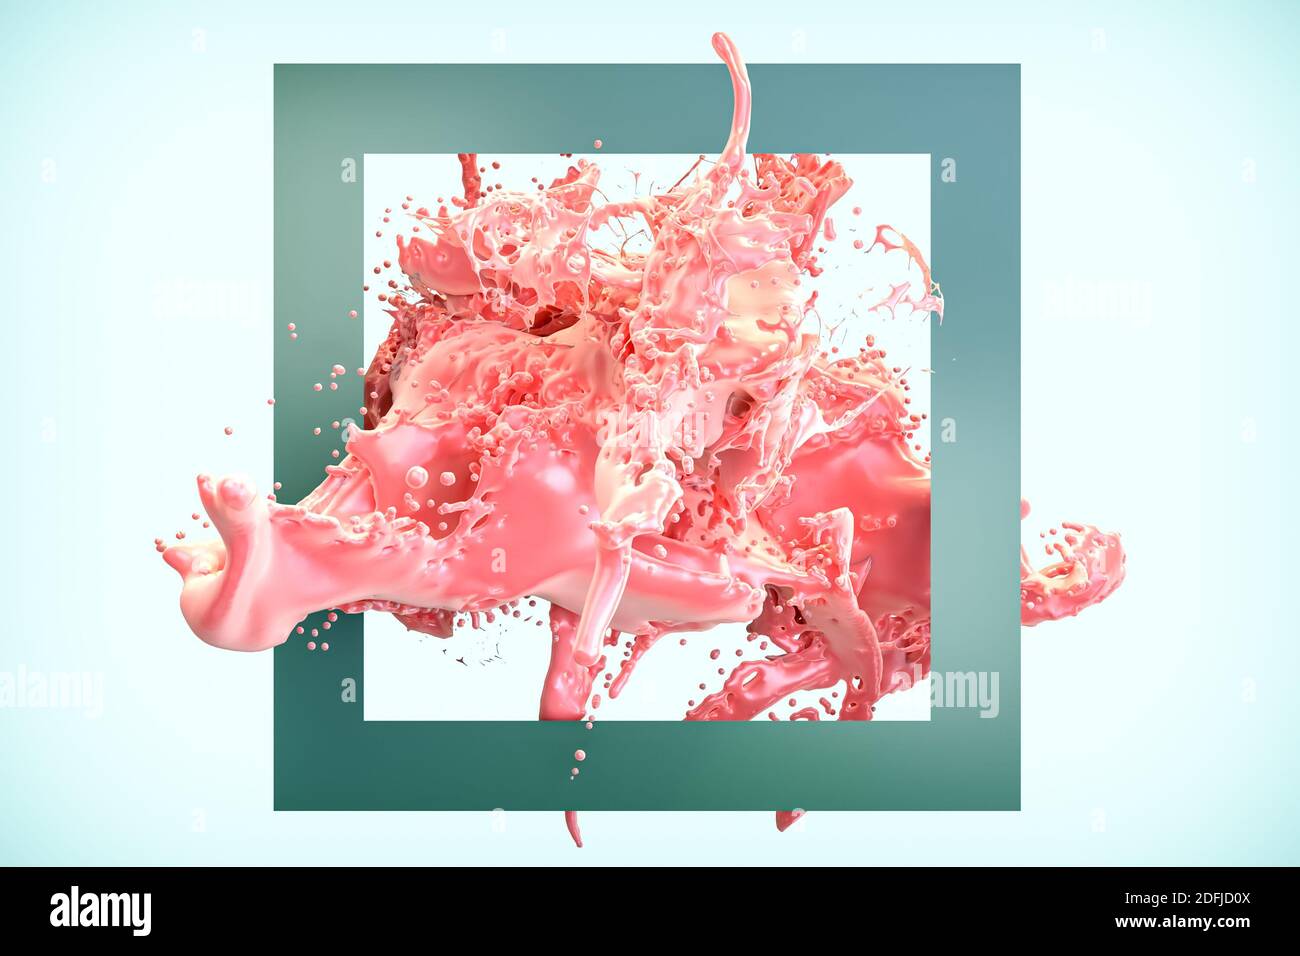 Rosa rötliche Farbe Spritzer abstrakt in einem grünen Rahmen 3D-Rendering-Illustration. Stockfoto